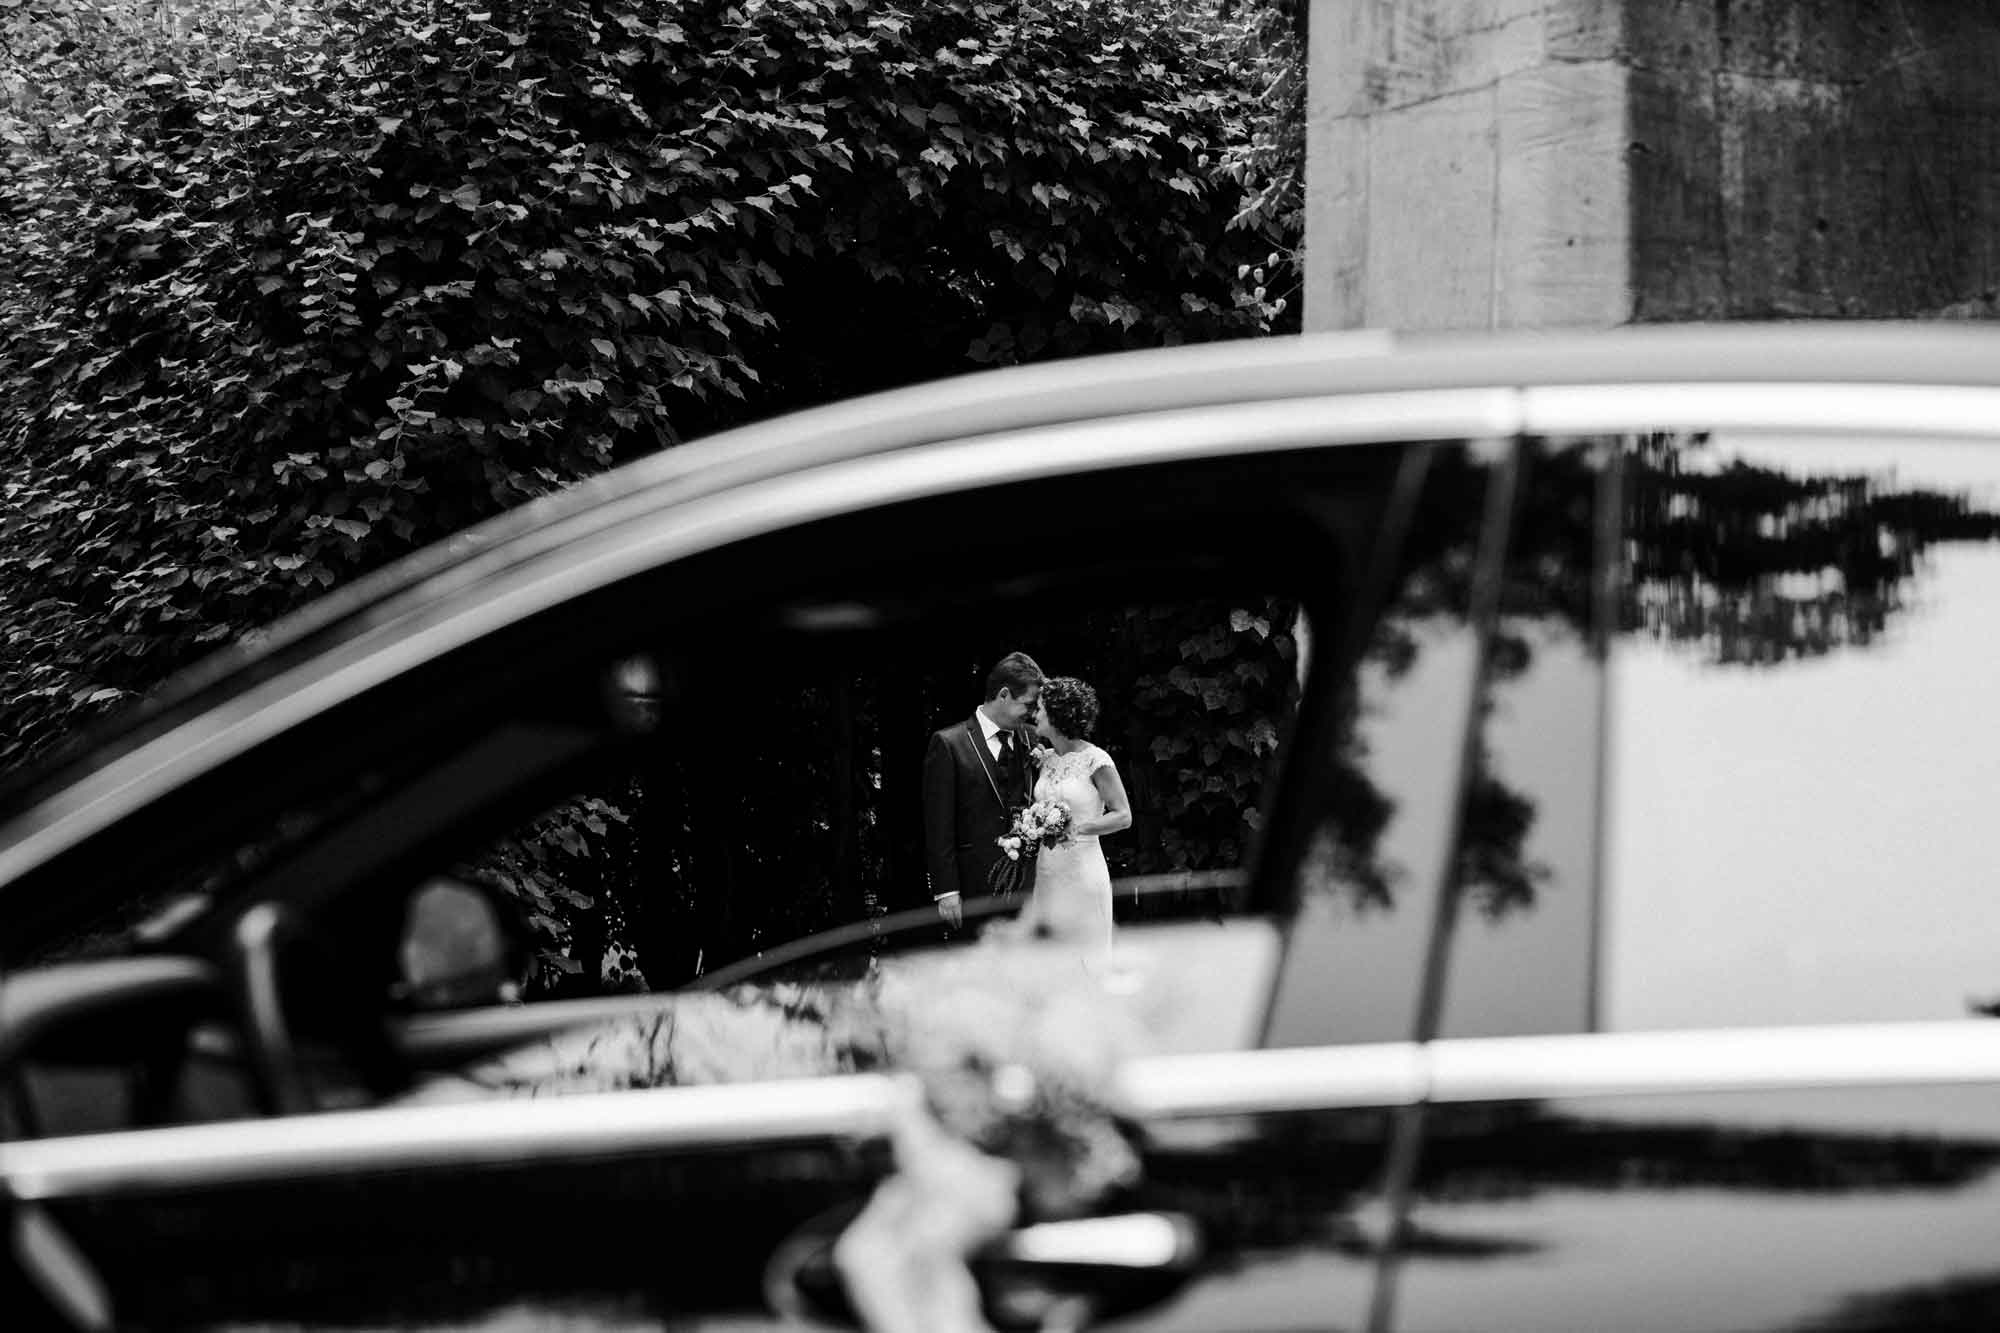 Verliebtes Brautpaar durch offene Autofensterscheibe fotografiert. Schwarz-weiß Aufnahme.